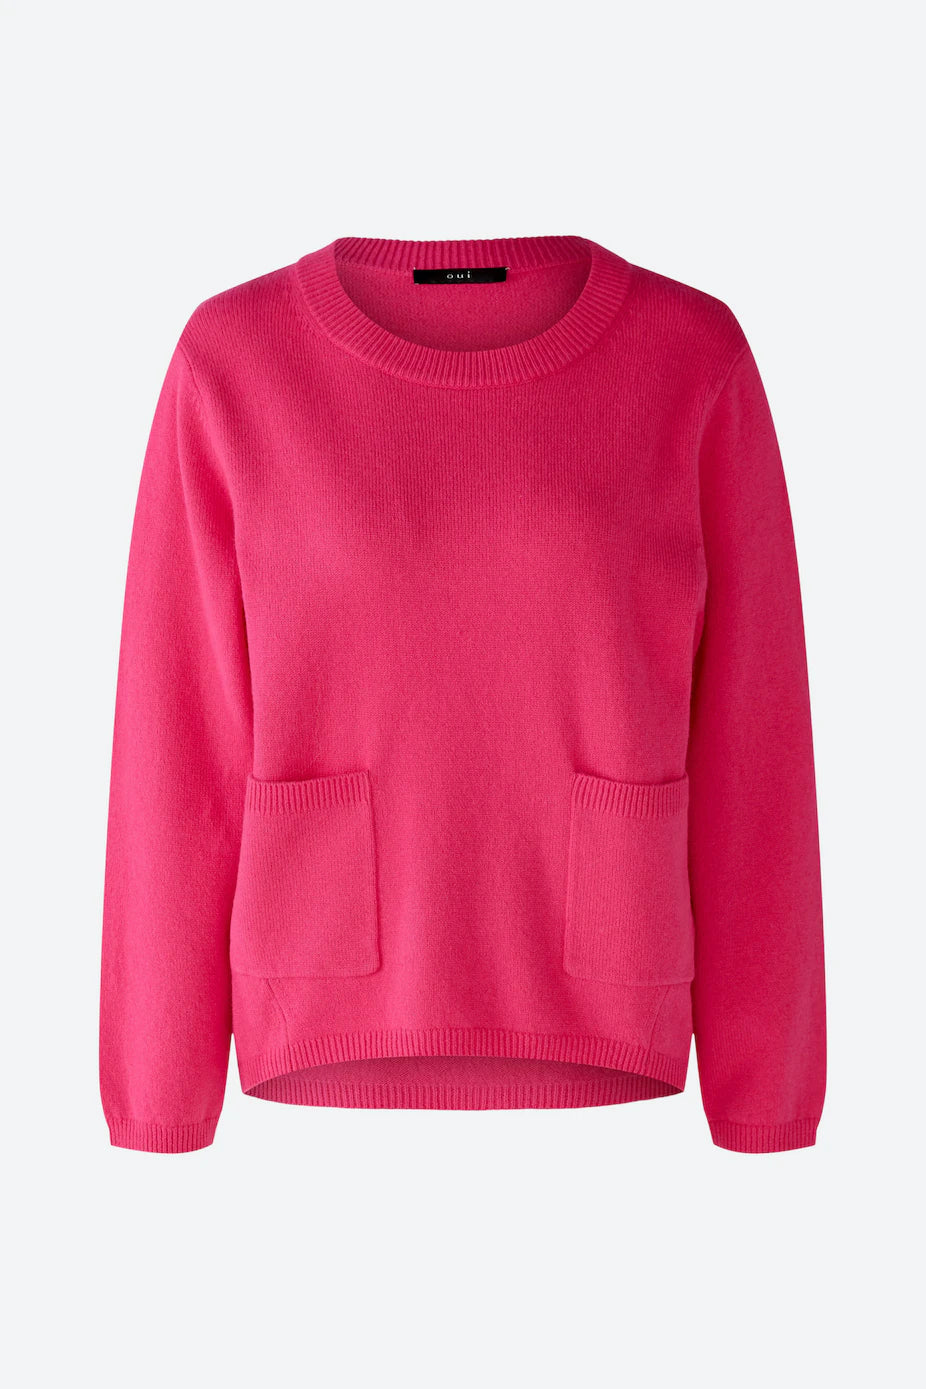 OUI Pink Sweater